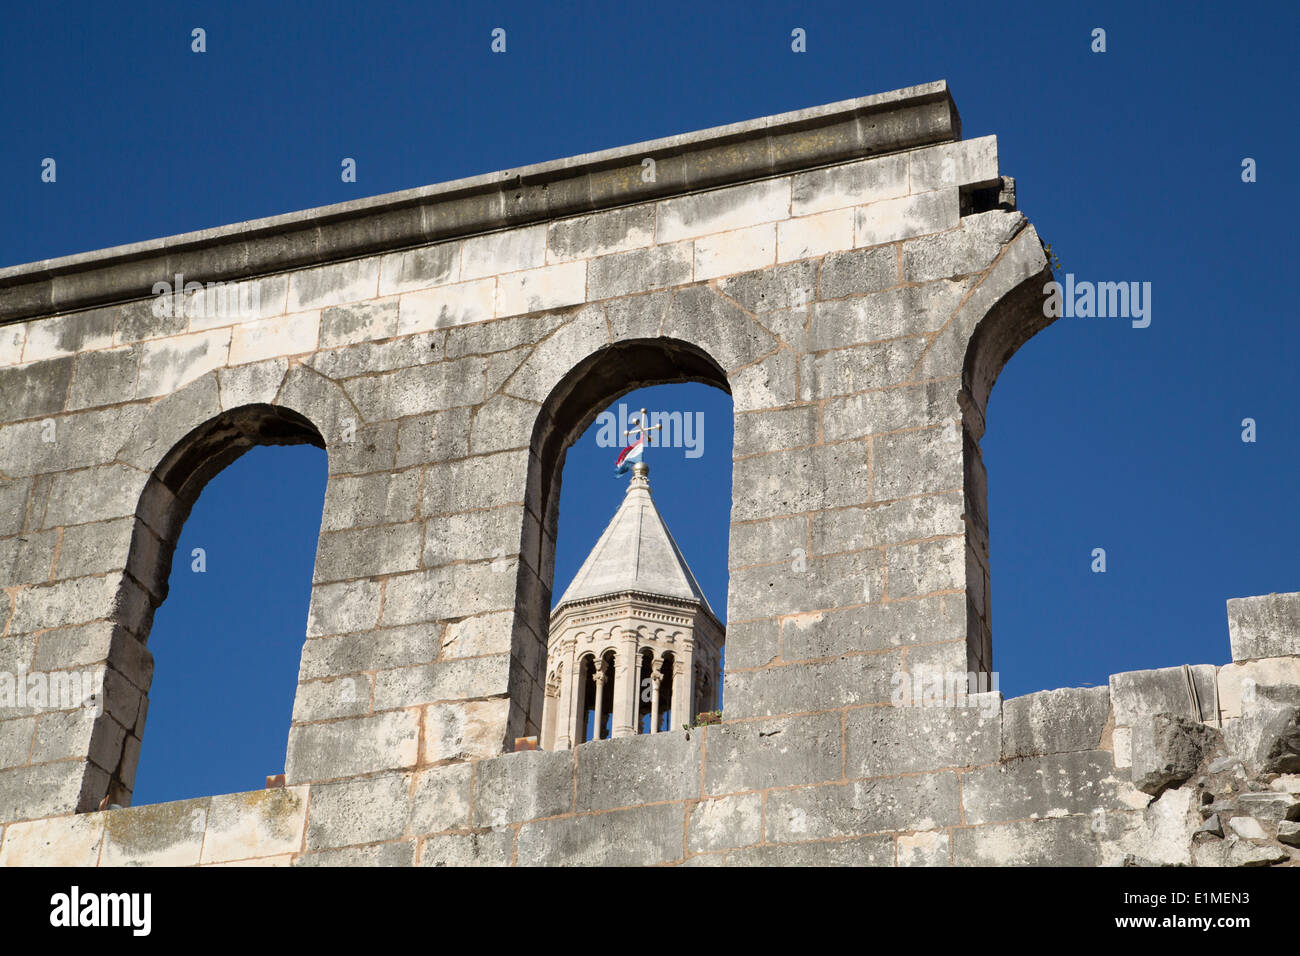 Croacia, Split, el Palacio de Diocletian, la pared exterior cerca de Silver Gate (en primer plano), torre de la catedral de san Domnio (fondo) Foto de stock